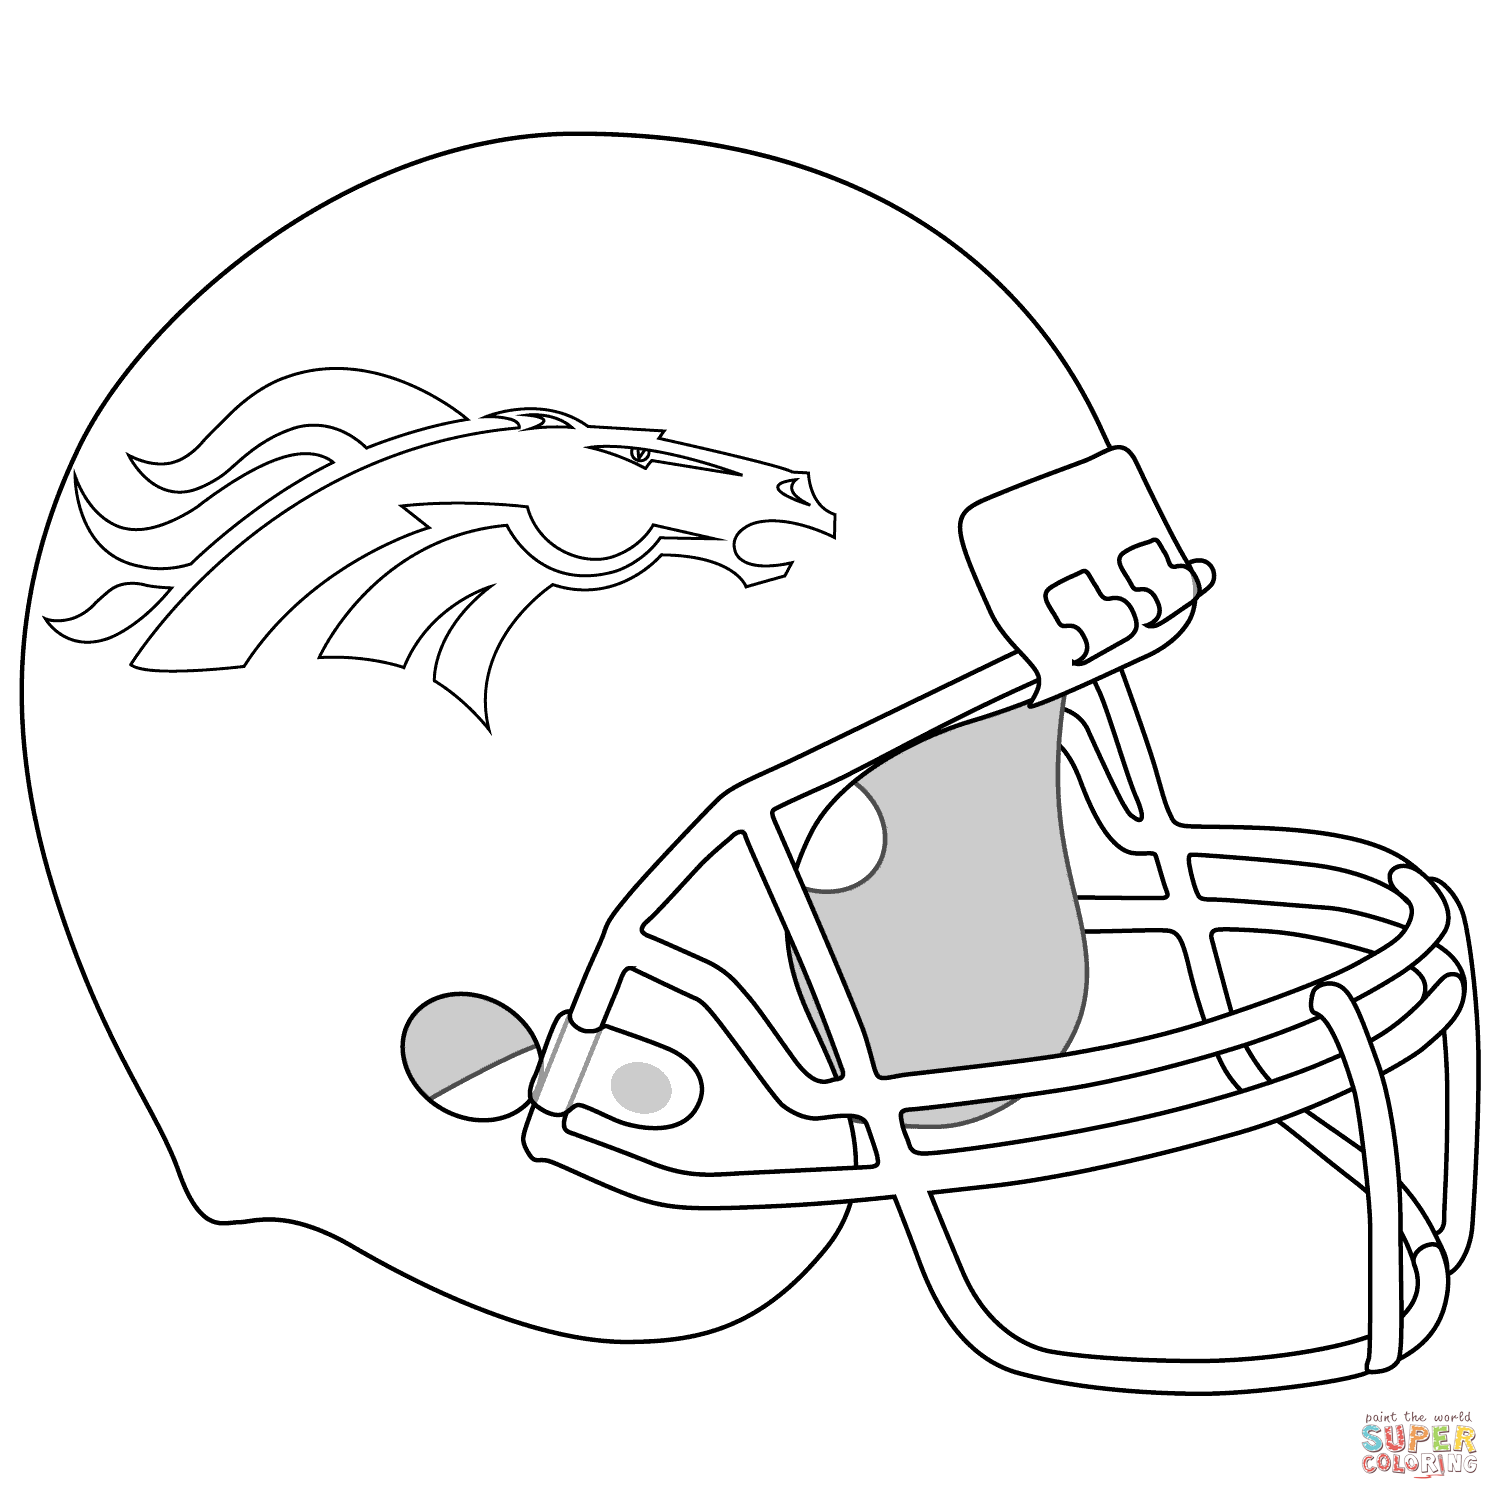 Simple Football Helmet Drawing At Getdrawings | Free Download